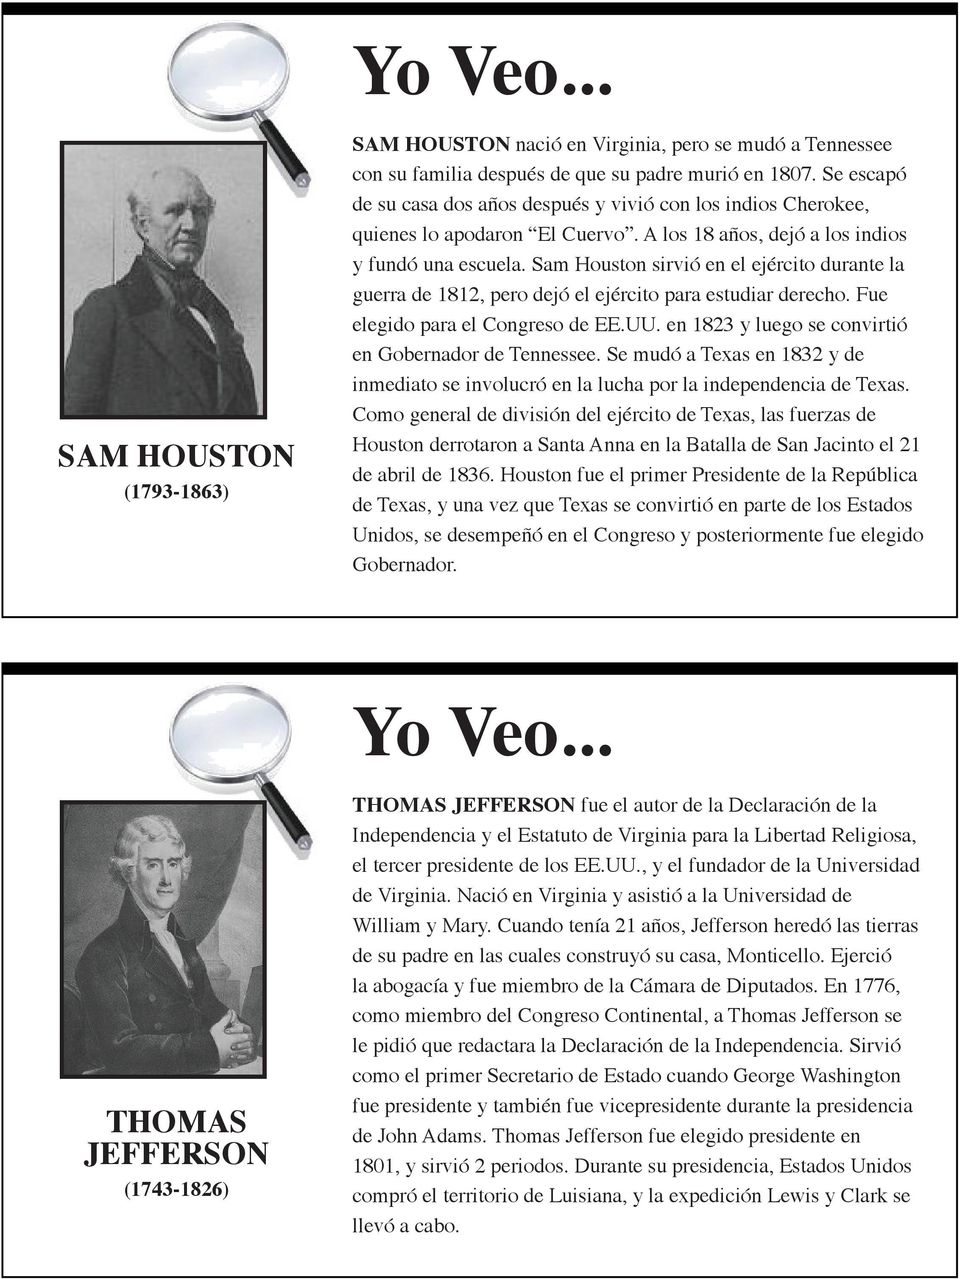 Sam Houston sirvió en el ejército durante la guerra de 1812, pero dejó el ejército para estudiar derecho. Fue elegido para el Congreso de EE.UU.